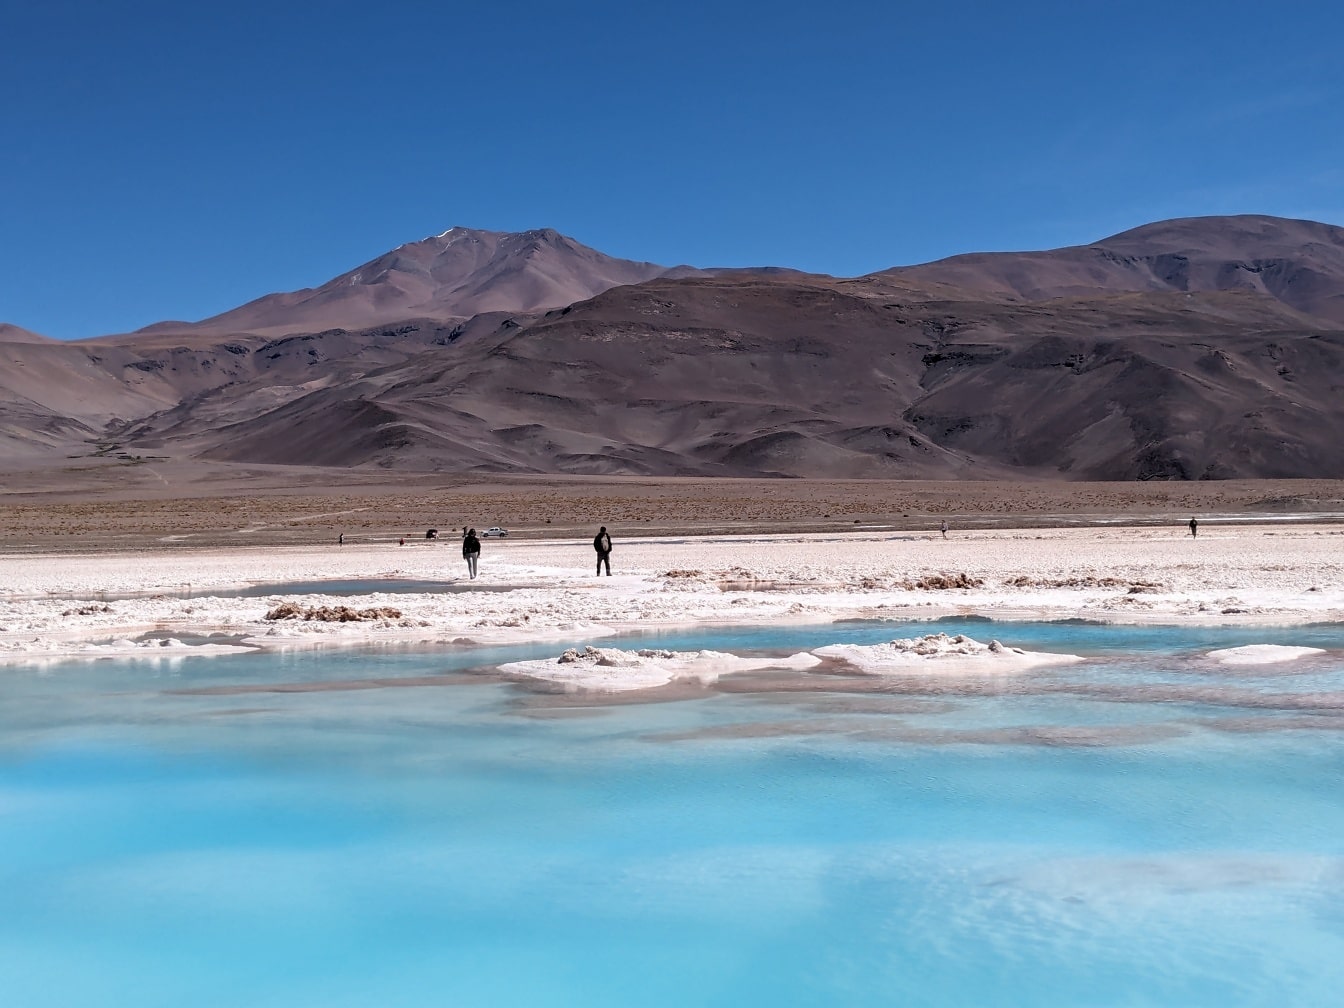 Người dân đứng trên những tinh thể muối ở bãi biển hồ muối với làn nước màu xanh trên sa mạc